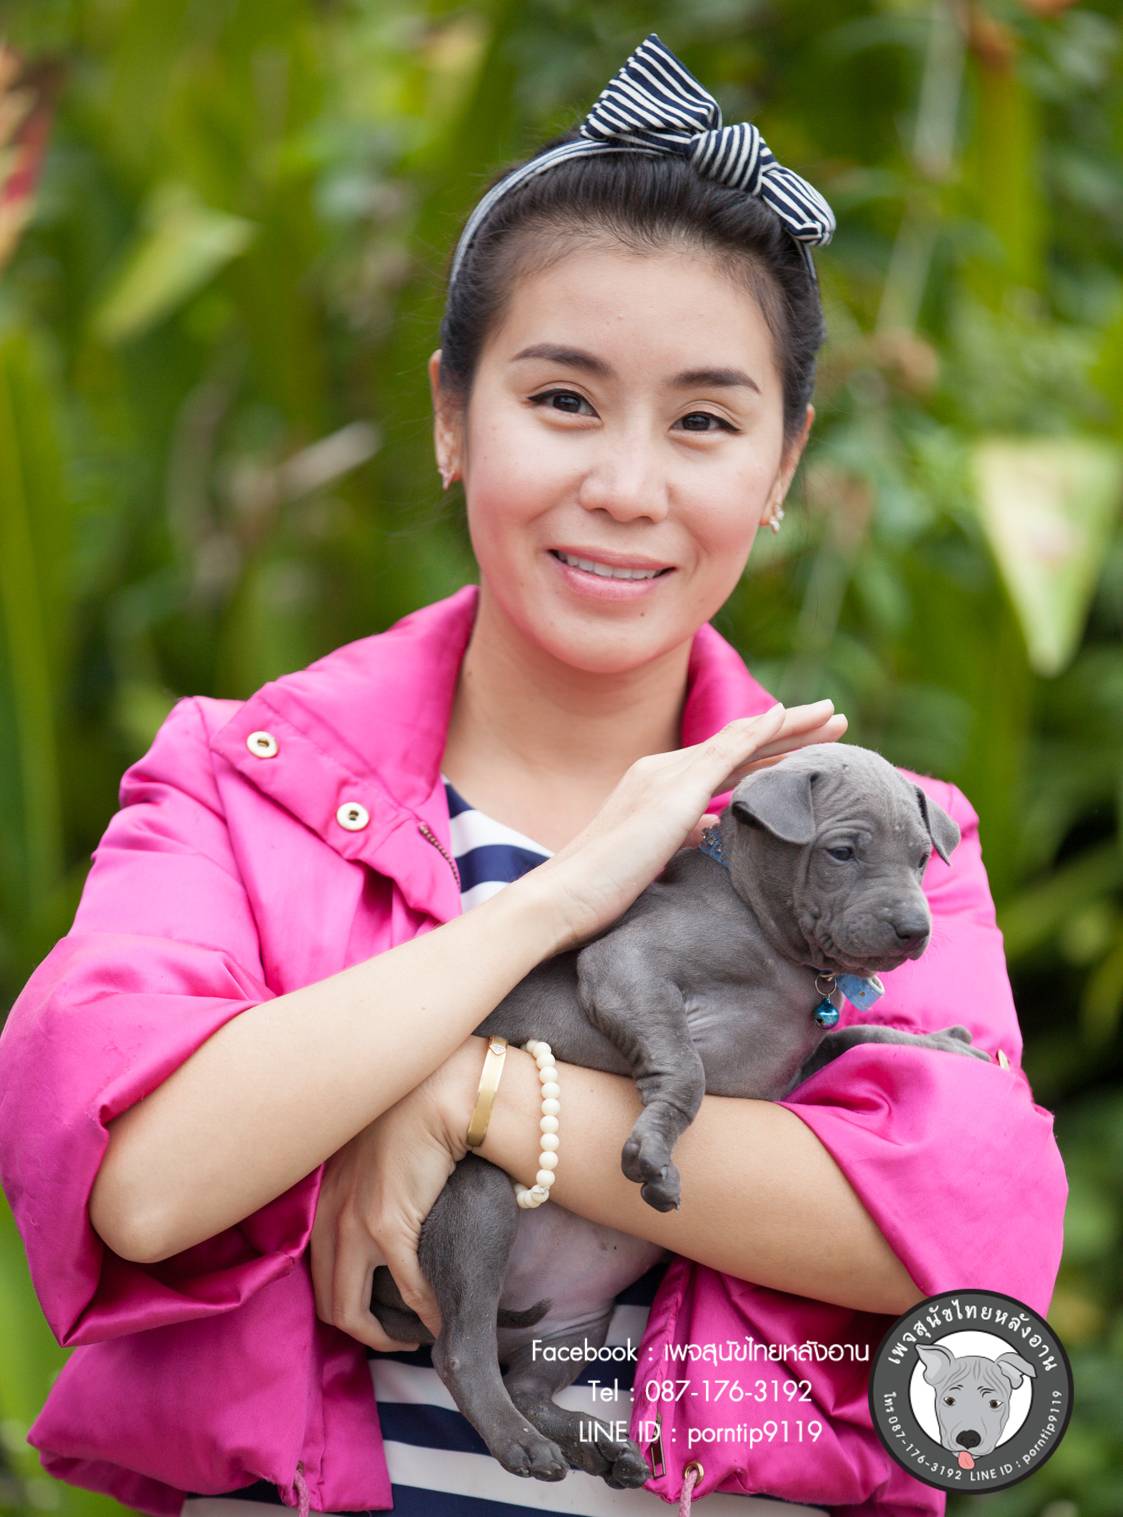 สุนัขไทยหลังอานเกรดสวยสายเลือดตราดแท้ โทร 0871763192,TRD,thairidgeback,thairidgebackdog, blue thairidgeback , red thairidgeback , ISABELLA , FEMALE , MALE, พรทิพย์เชียงรายฟาร์ม, สายเอกลักษณ์,แนะนำสุนัขไทยหลังอาน,ไทยหลังอานมีใบเพ็ดดีกรี,ซื้อหมา,ขายหมา,หมาไทย,หมาไทยหลังอาน,หมาไทยตราด,หมาหลังอานสวย,นิสัยหมาหลังอาน  ,ราคาหมาหลังอาน,  สุนัขไทยหลังอาน  ,   ขายสุนัขไทยหลังอาน  ,  ลูกสุนัขไทยหลังอาน ,  จำหน่ายสุนัขไทยหลังอาน ,  ไทยหลังอานราคา   , ไทยหลังอานนิสัย  ,    หมาไทยหลังอานแท้  ,   หมาหลังอานแท้  ,    หลังอานป้าสมคิด  ,  คอกสุนัขไทยหลังอาน   ,  ฟาร์มสุนัขไทยหลังอาน ,  หลังอานพรทิพย์ ,พรทิพย์ไทยหลังอาน,  สุนัขไทยหลังอานเชียงราย,เชียงรายไทยหลังอาน,ภาคเหนือไทยหลังอาน,ไทยหลังอานภาคเหนือ,แม่สายไทยหลังอาน  ,หลังอานแม่สาย,  สุนัขไทยหลังอานสีสวาด,สุนัขไทยหลังอานสีแดงเม็ดมะขาม,สีแดงเม็ดมะขาม,สีกลีบบัว,ขนสั้น,ขนกำมะหยี่,อานโบว์ลิ่ง,อานใบโพธิ์,อานเทพพนม,อานเข็ม,อานพิณ,มุมขาสุนัข,เส้นหลัง,ลิ้นดำ,เล็บดำ,ตาดำ,ฟันสุนัข,ขวัญที่อาน,สุนัขเฝ้าบ้าน,สุนัขขนาดกลาง,ฝึกสุนัข,ไทยหลังอานสายตราด,ไทยหลังอานจันทบุรี,ไทยหลังอานไทยแชมป์,ประกวดสุนัขไทยหลังอาน,หาซื้อสุนัขไทยหลังอาน,สุนัขไทยหลังอานเชียงใหม่,เชียงใหม่ขายสุนัขไทยหลังอาน,อำเภอเมืองเชียงรายขายสุนัข,สุนัขไทยหลังอานสายเลือดแชมป์,ไทยหลังอานพ่อพันธุ์,ไทยหลังอานแม่พันธุ์,เลี้ยงเล่น,เฝ้าสวน,สุนัขฉลาด,